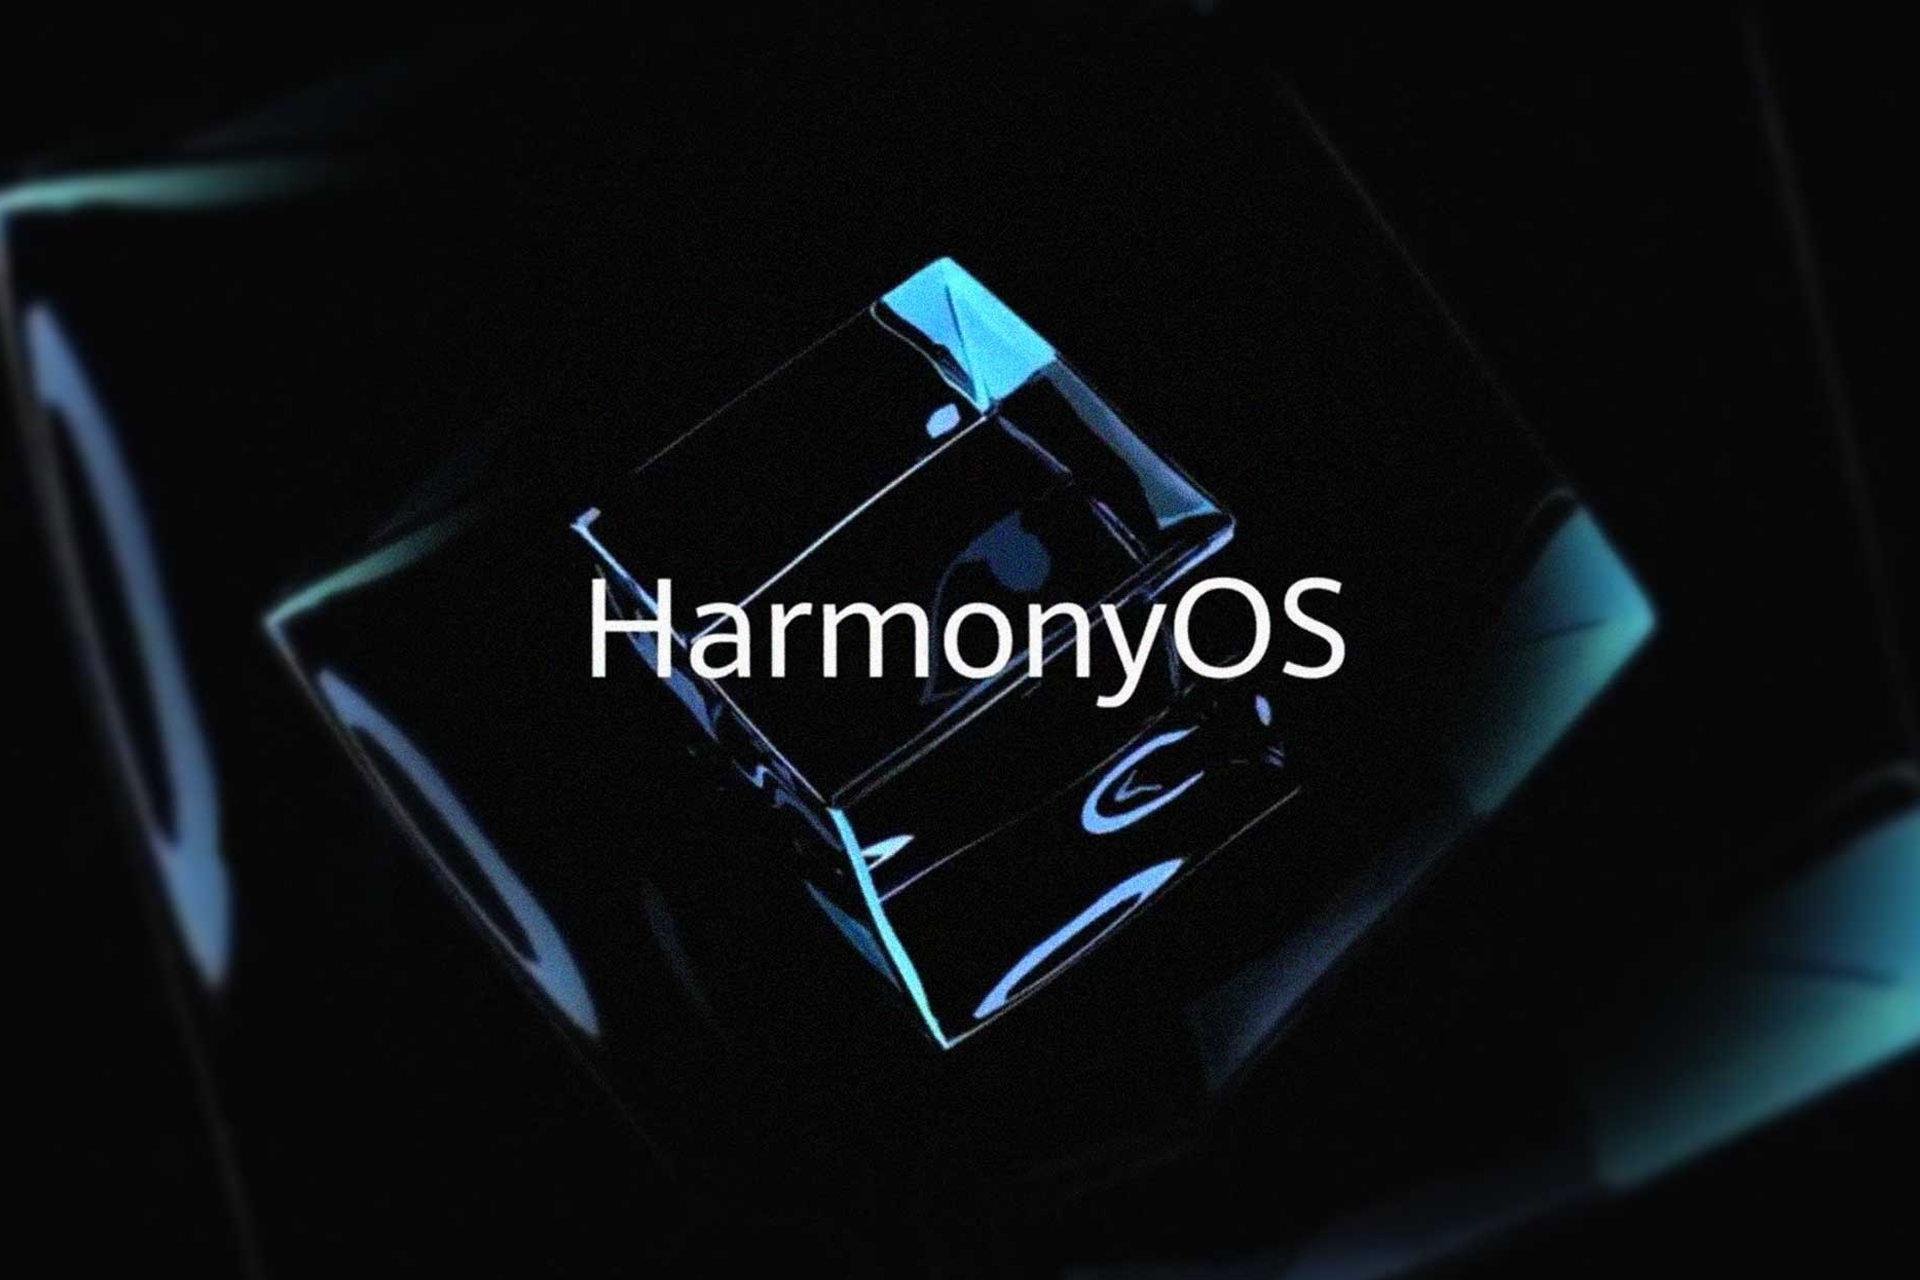 لوگو هارمونی او اس هواوی / Huawei HarmonyOS طرح گرافیکی مشکی